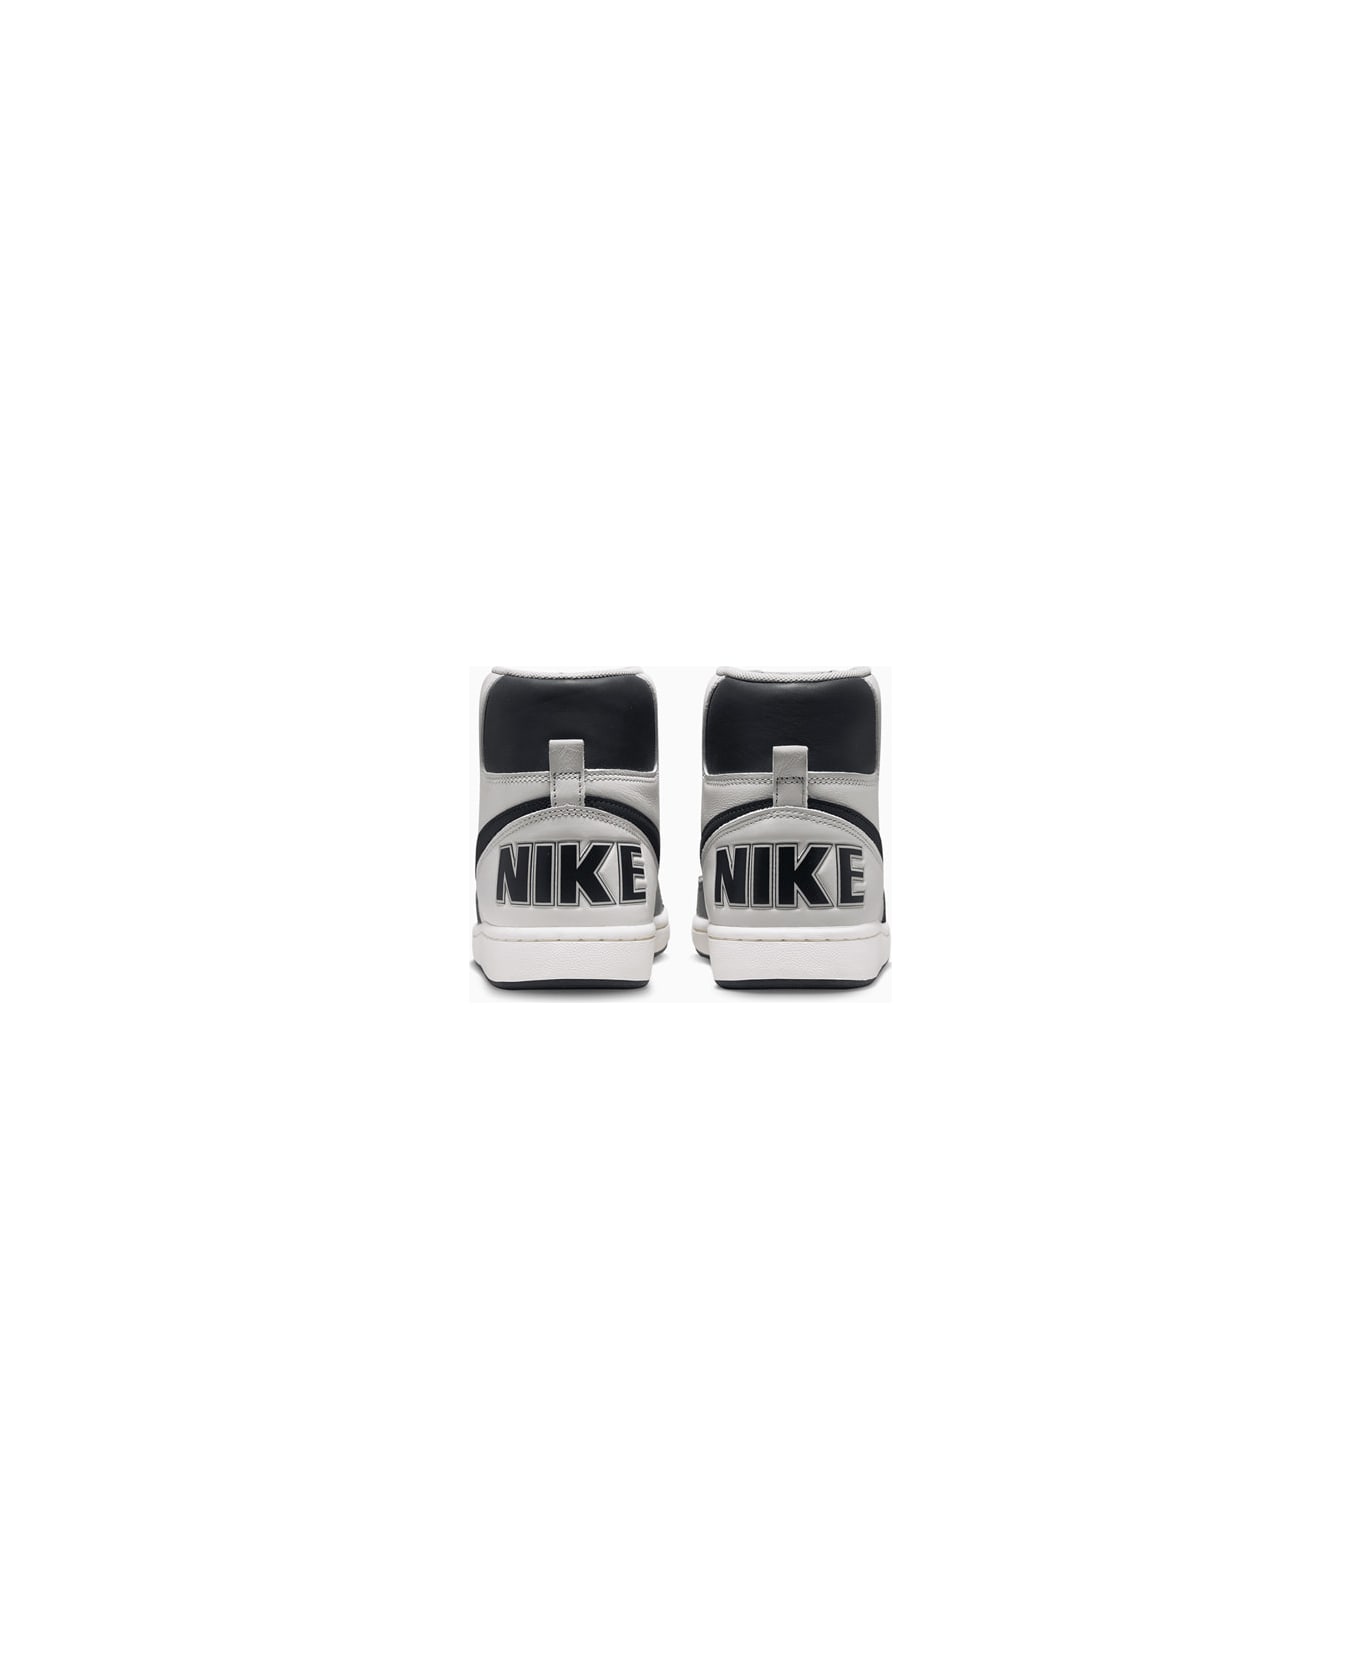 Nike Terminator High Og 'georgetown' Sneakers Fb1832-001 - Multiple colors